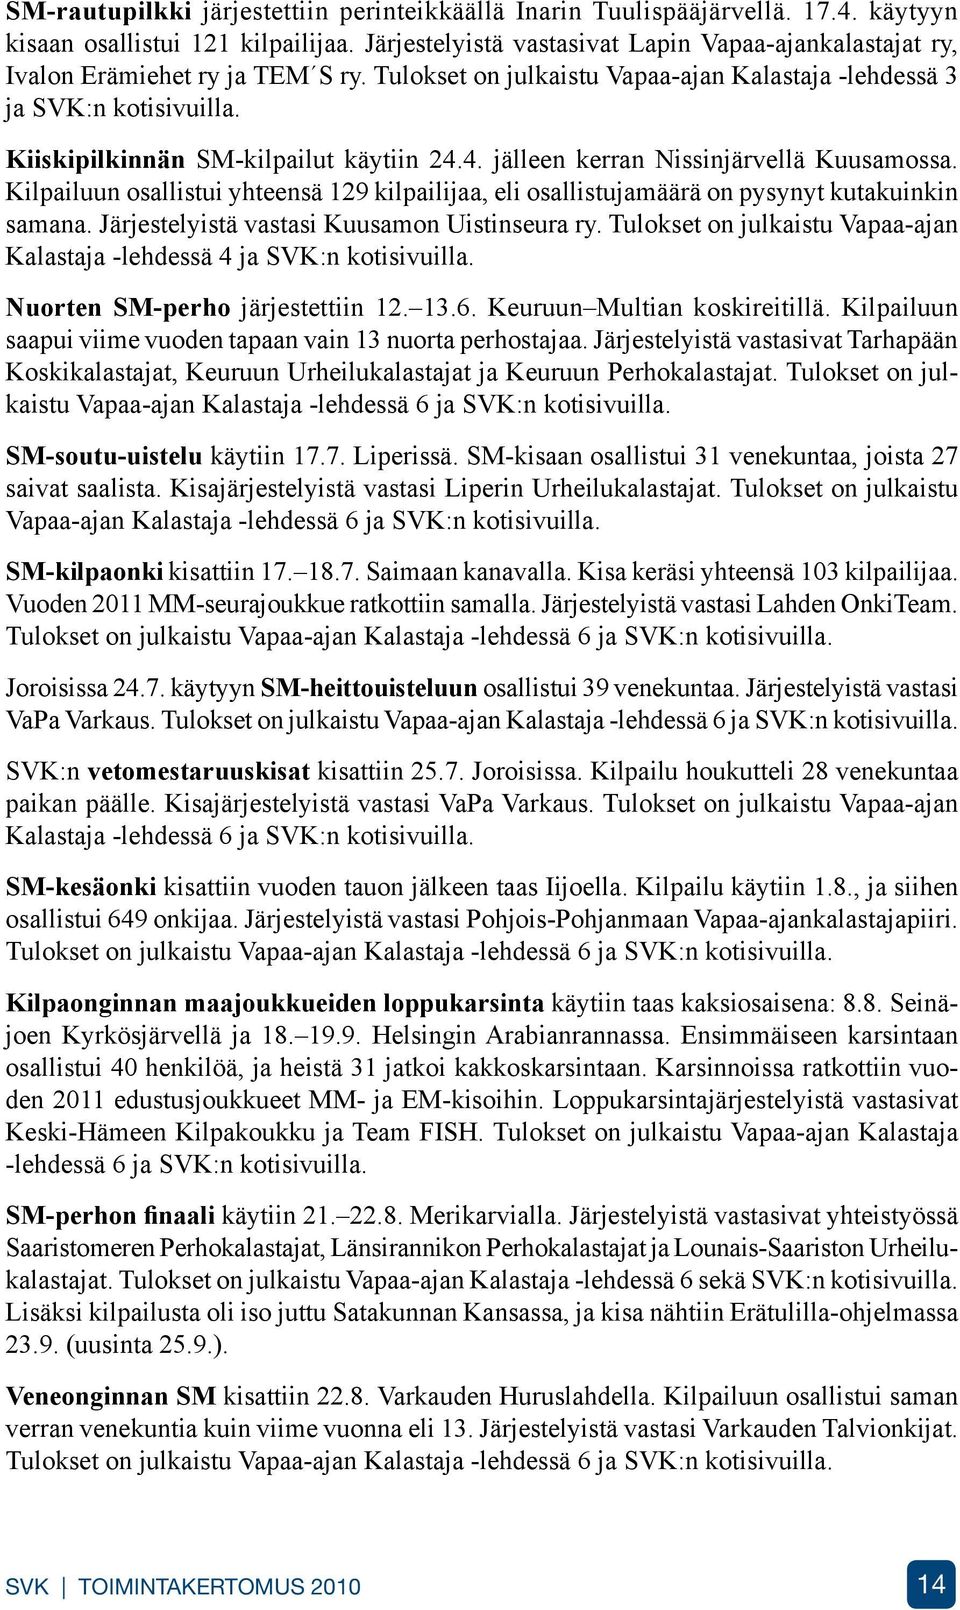 Kiiskipilkinnän SM-kilpailut käytiin 24.4. jälleen kerran Nissinjärvellä Kuusamossa. Kilpailuun osallistui yhteensä 129 kilpailijaa, eli osallistujamäärä on pysynyt kutakuinkin samana.